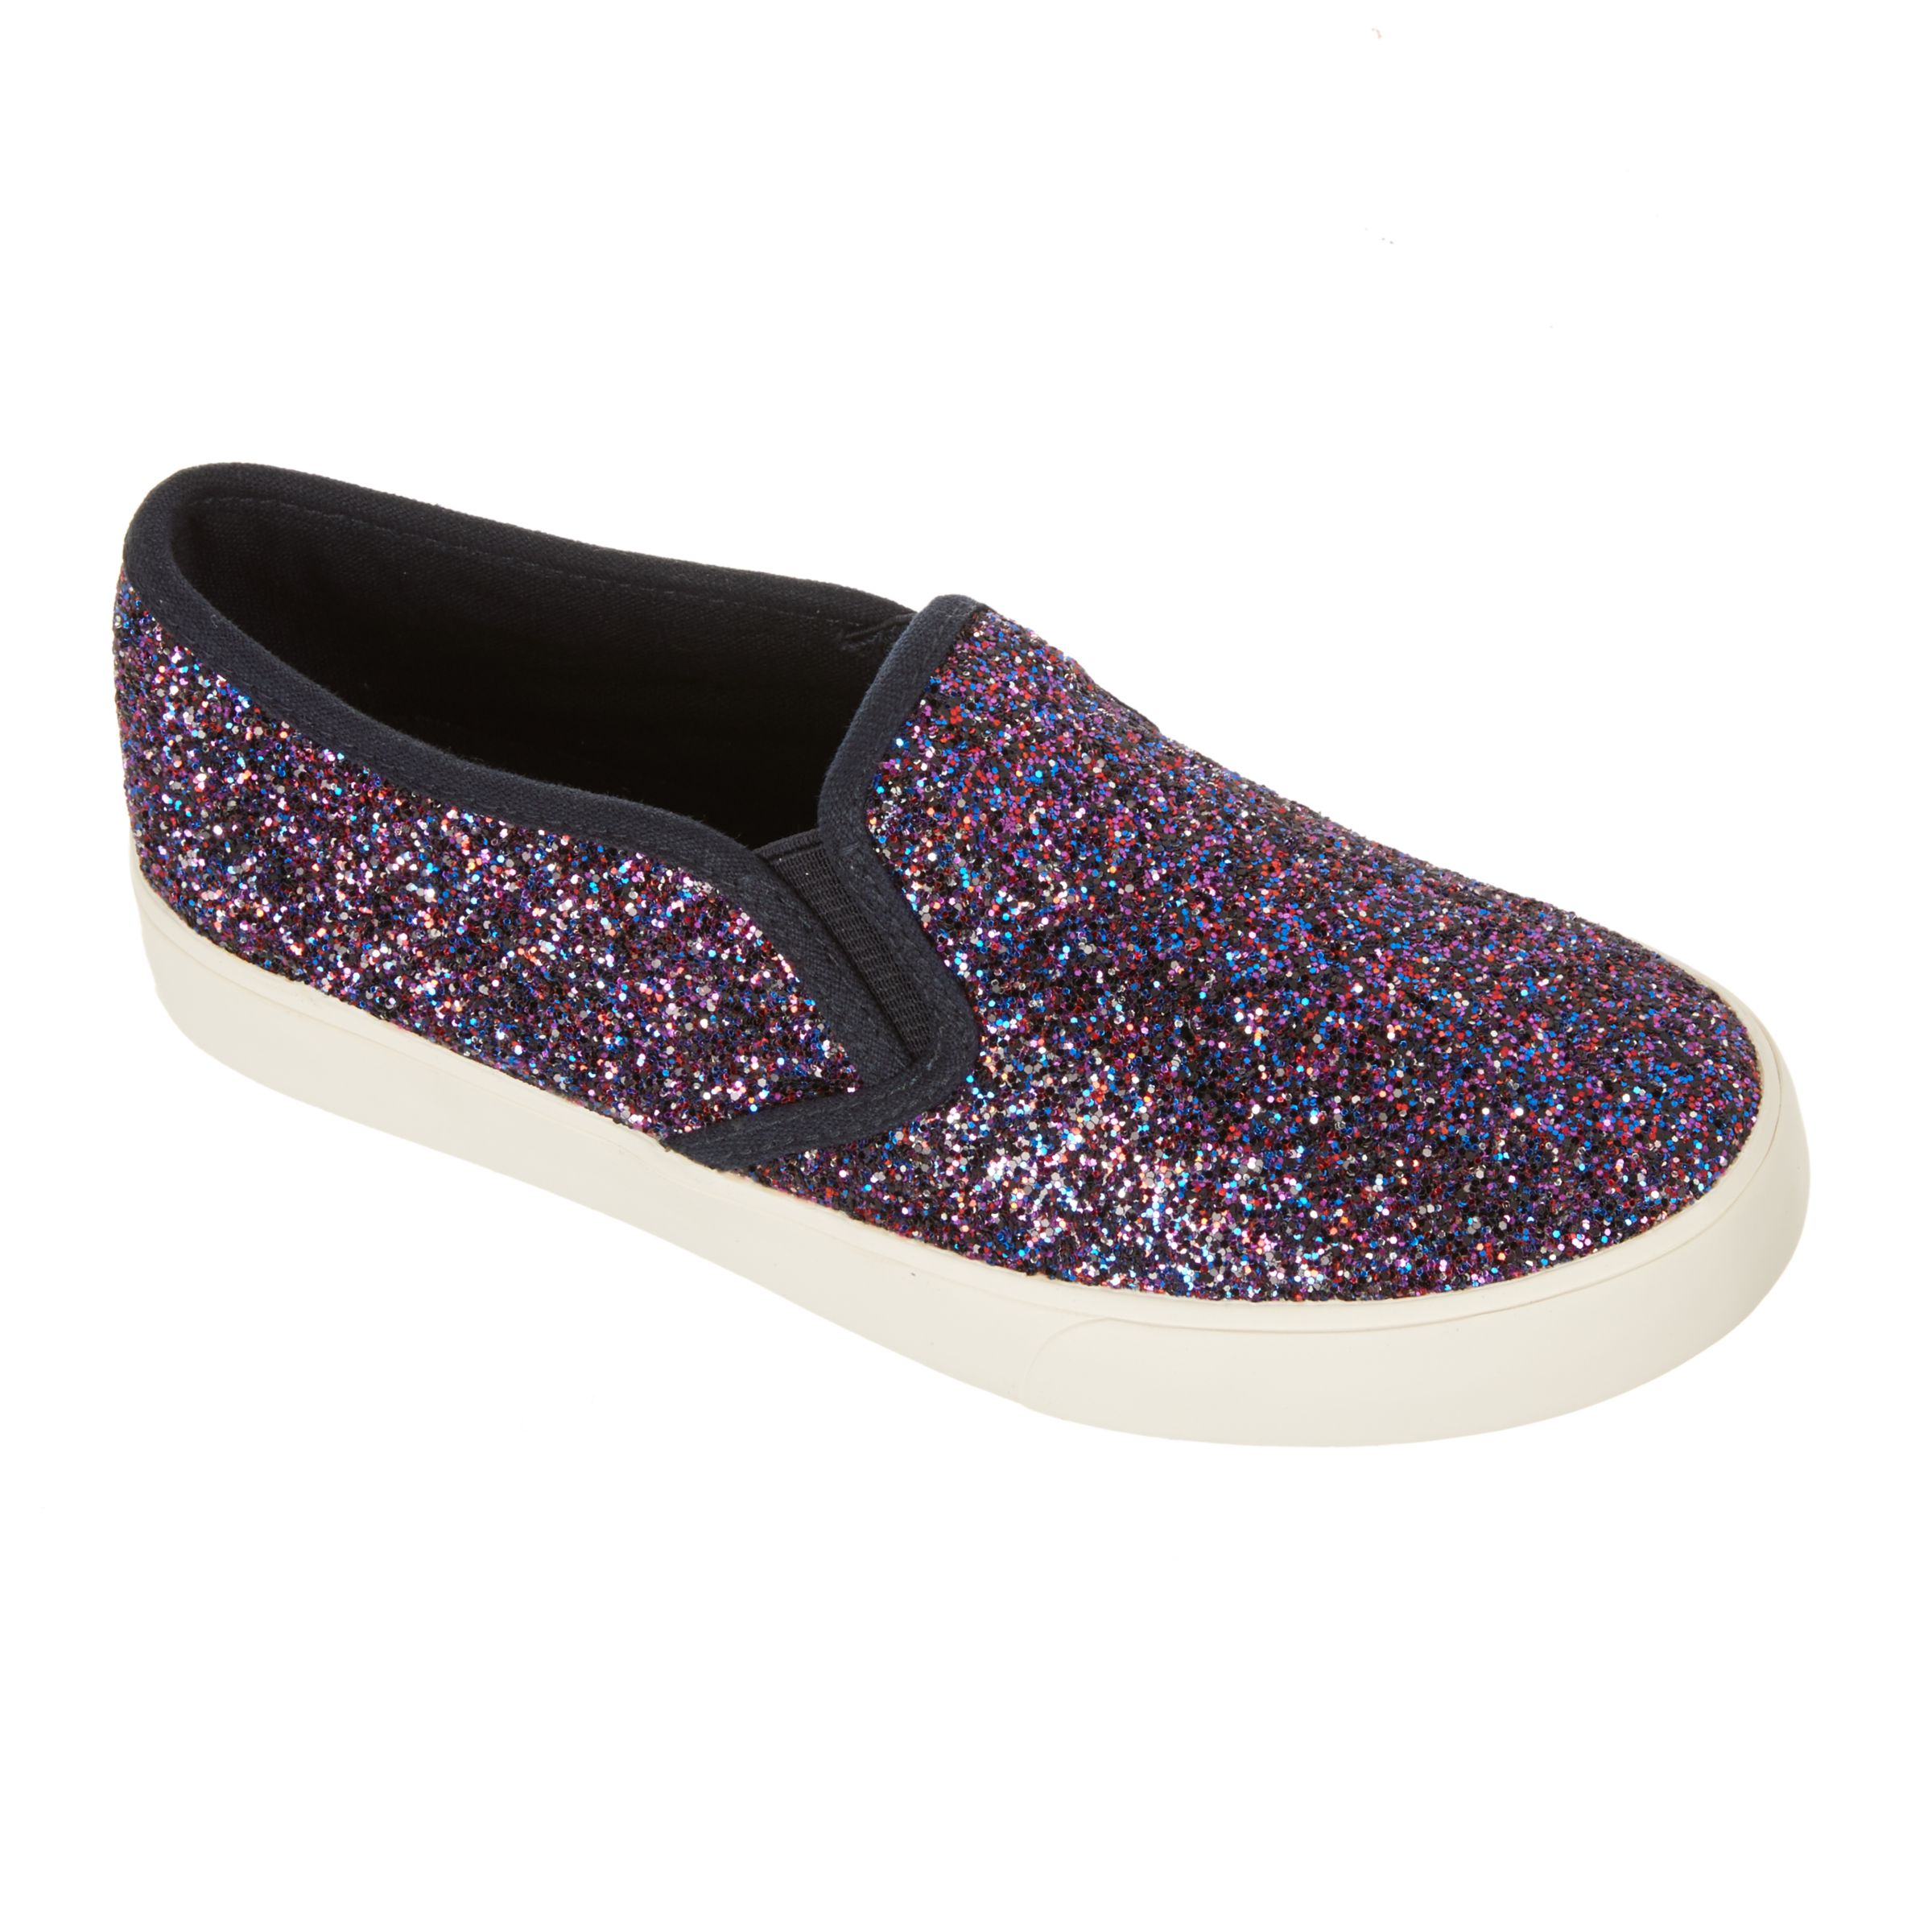 John Lewis & Partners Children's Pheobe Glitter Slip On Shoes, Purple, 1